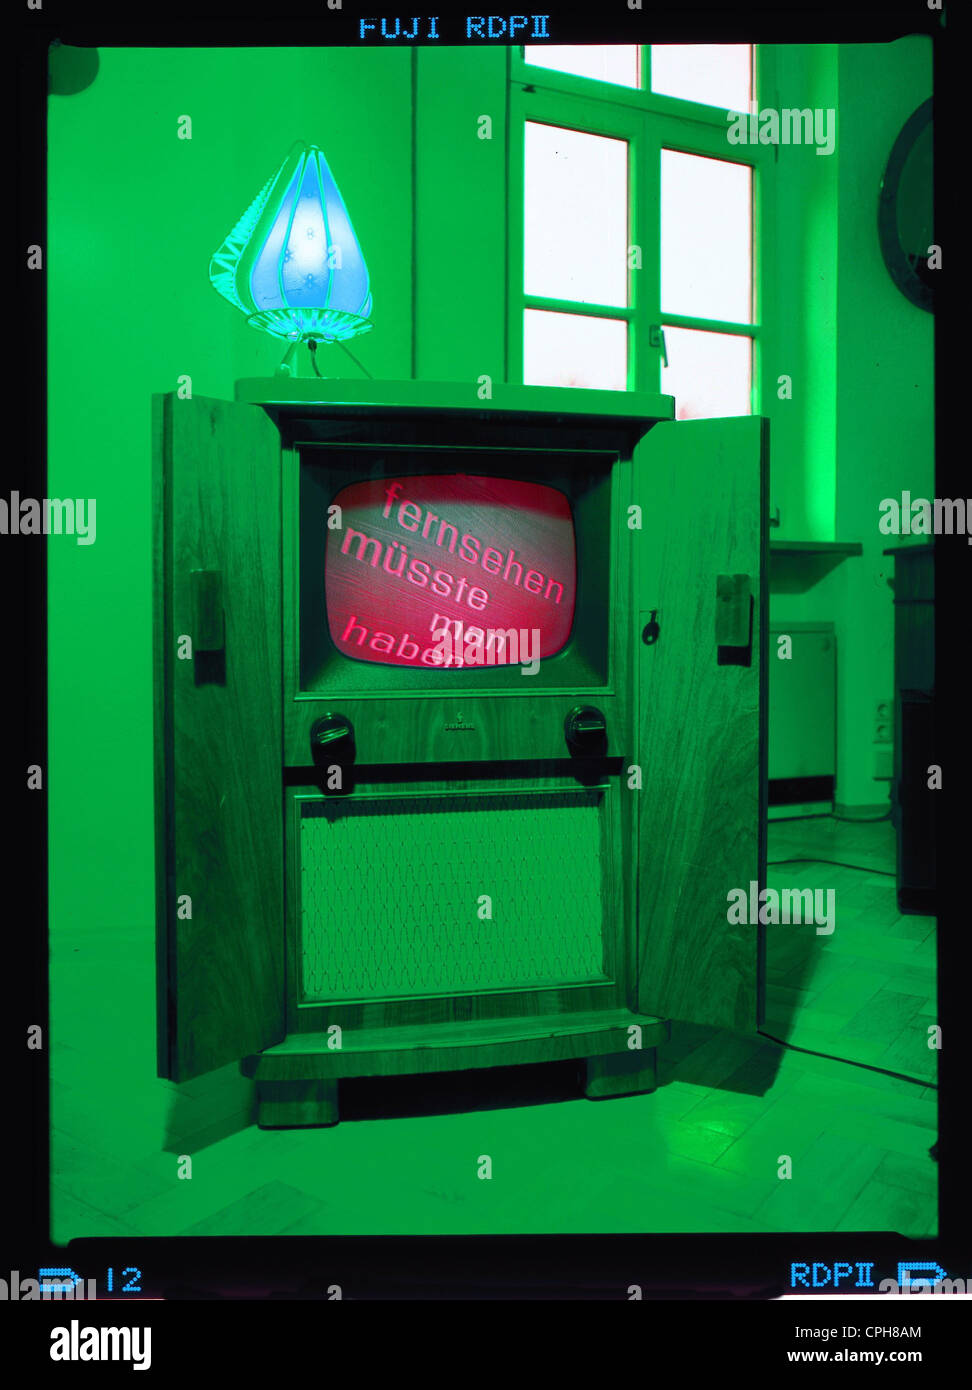 Rundfunk, Fernsehen, Werbeslogan der Fernsehindustrie, auf dem Bildschirm eines alten Siemens-Fernsehgeräts, Deutschland, Anfang der 1960er Jahre, Zusatzrechte-Clearences-nicht vorhanden Stockfoto